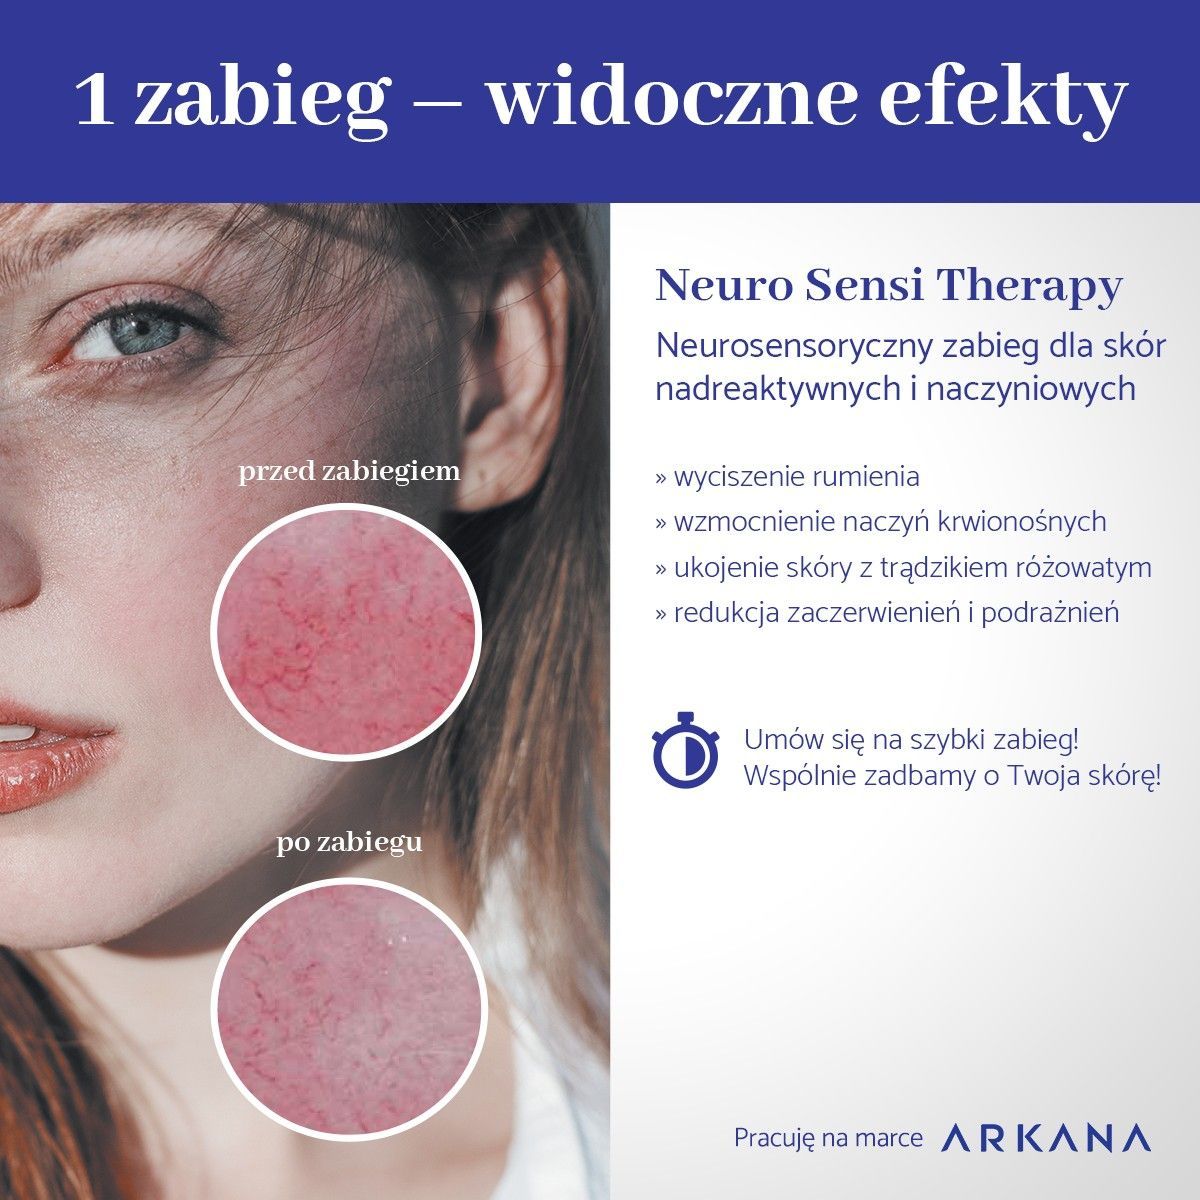 Portfolio usługi Arkana Neuro Sensi -zabieg dla skór nadreaktywnych